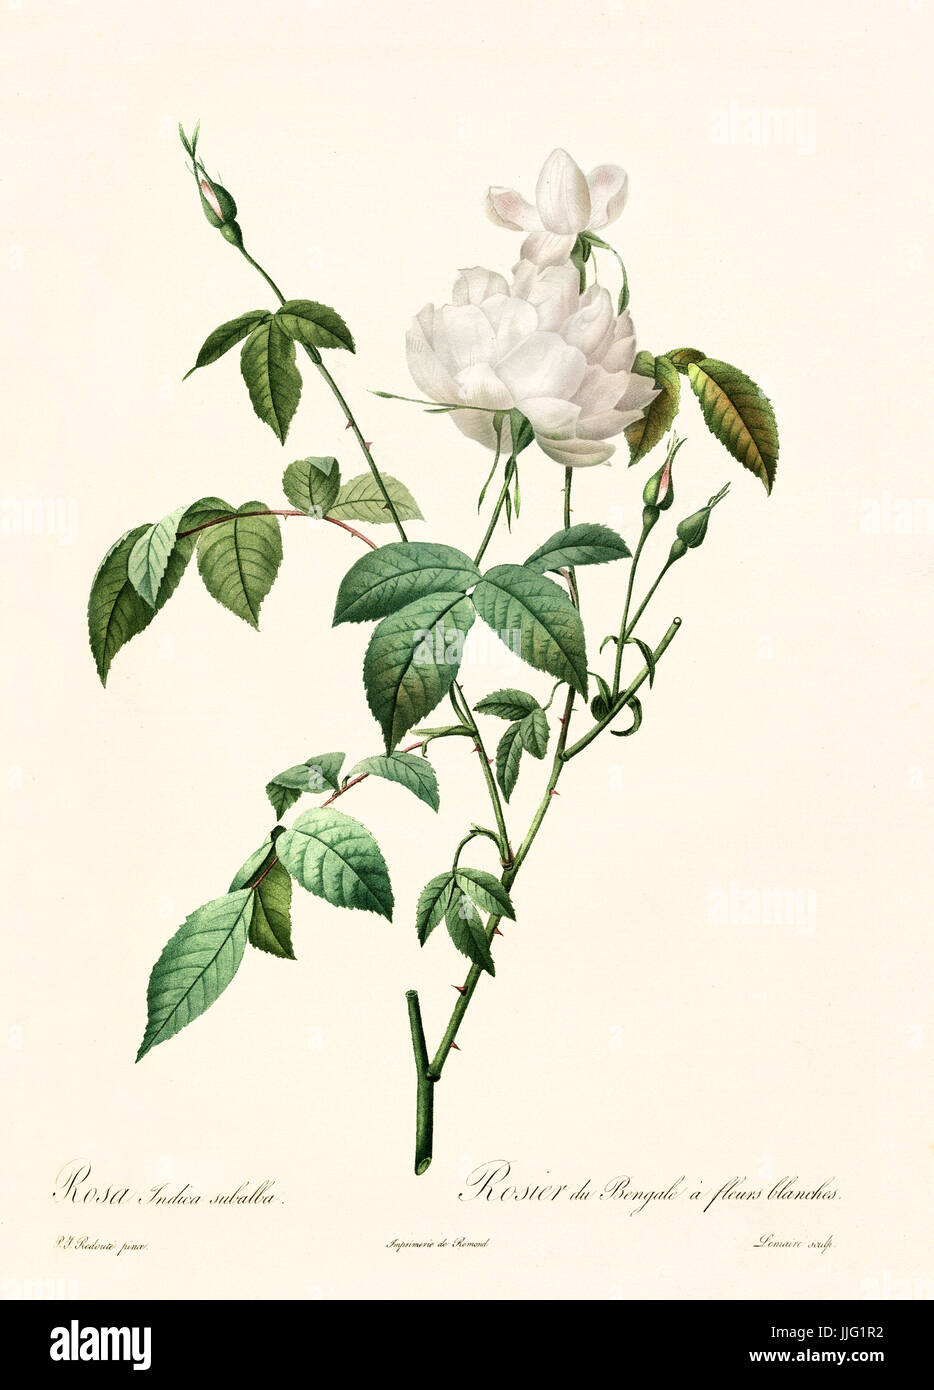 Vecchia illustrazione di rosa indica subalba. Creato da P. R. Redoute, pubblicato su Les Roses, Imp. Firmin Didot, Parigi, 1817-24 Foto Stock